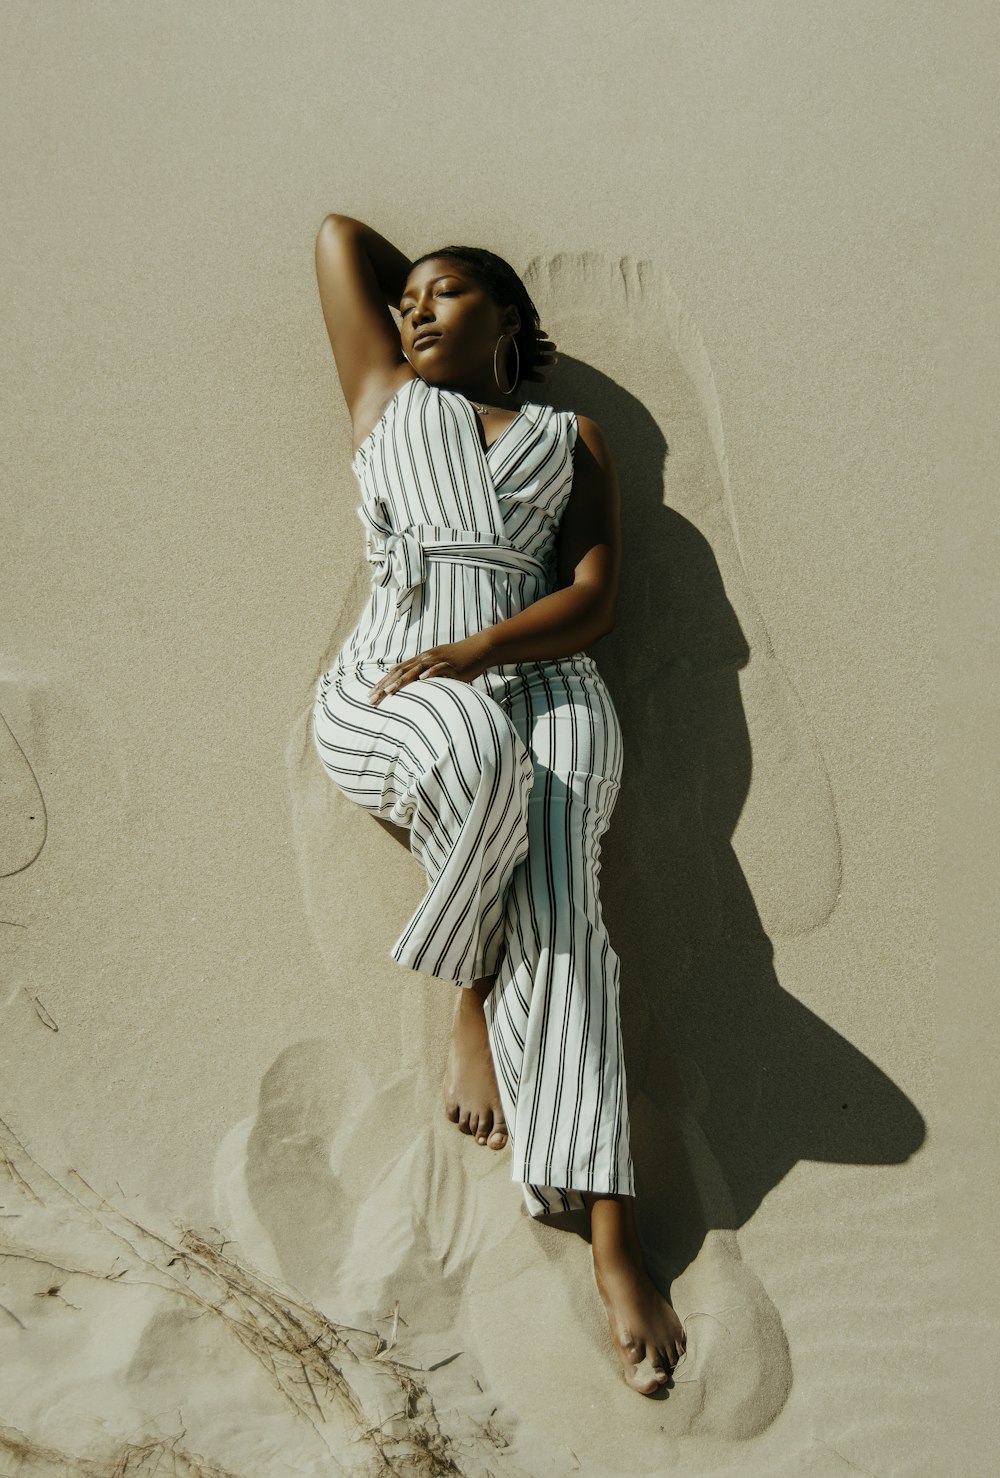 mujer con vestido de rayas blancas y negras de pie sobre la arena